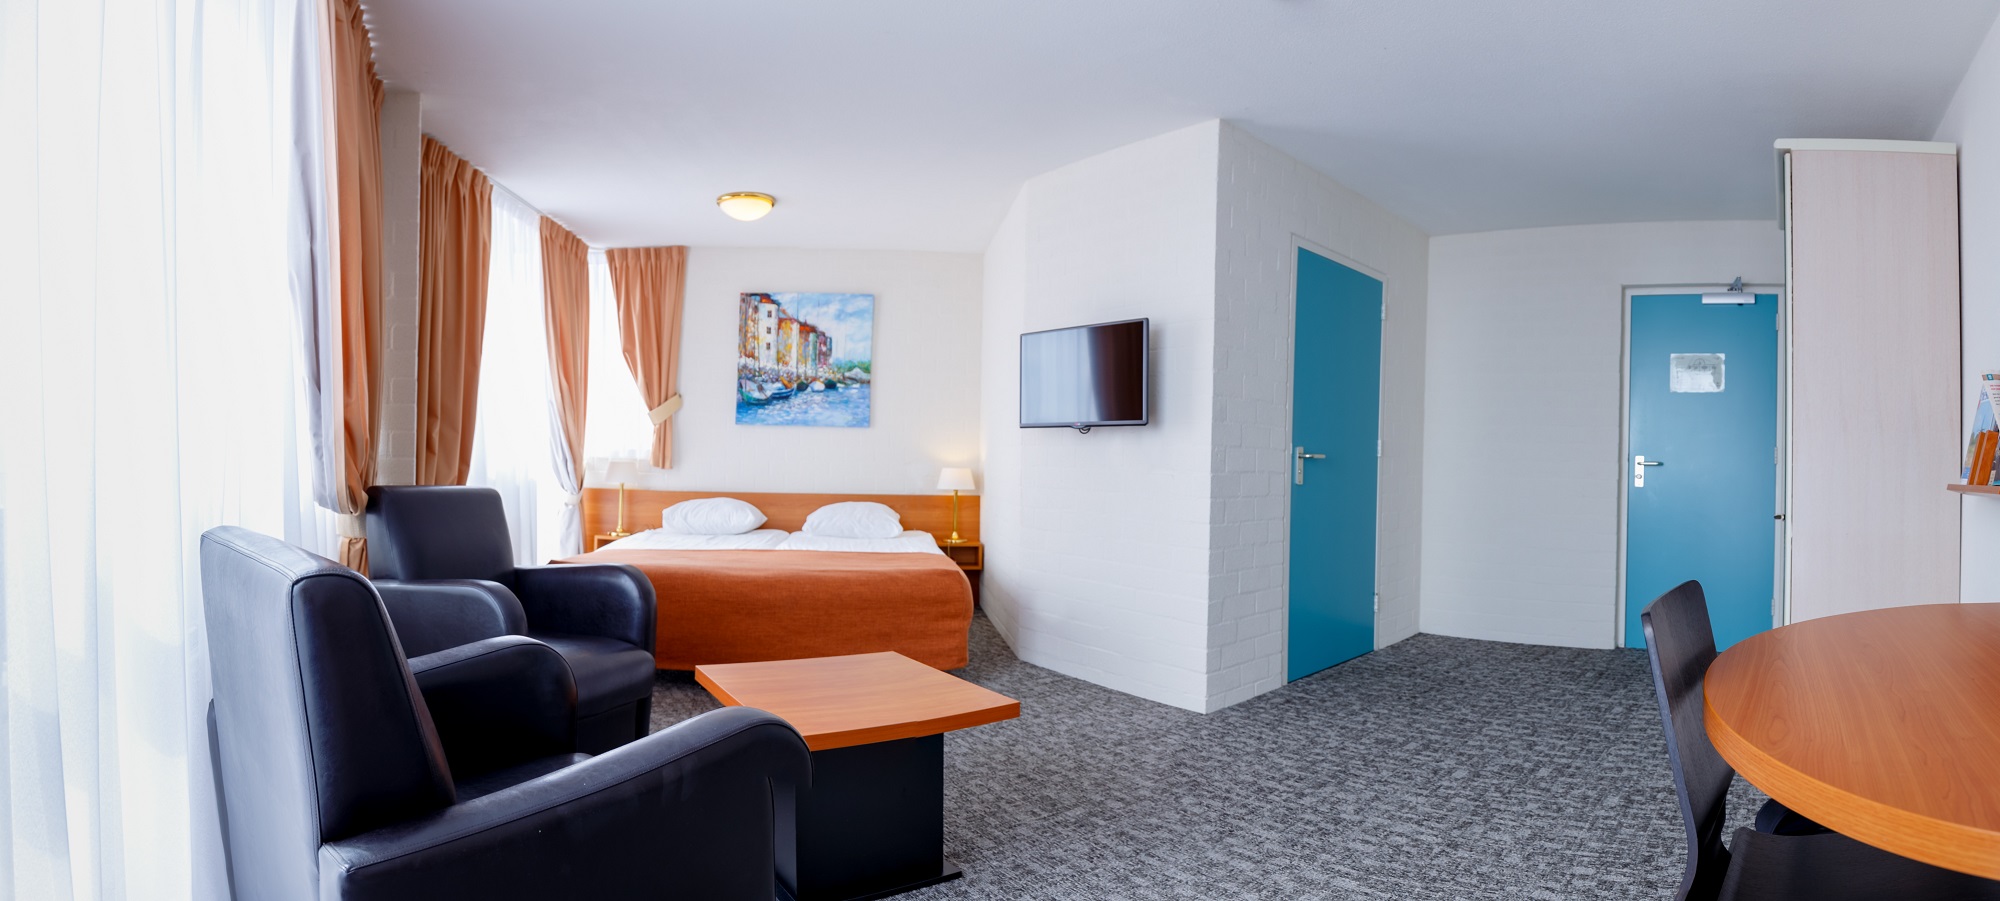 Comfort hotelkamer